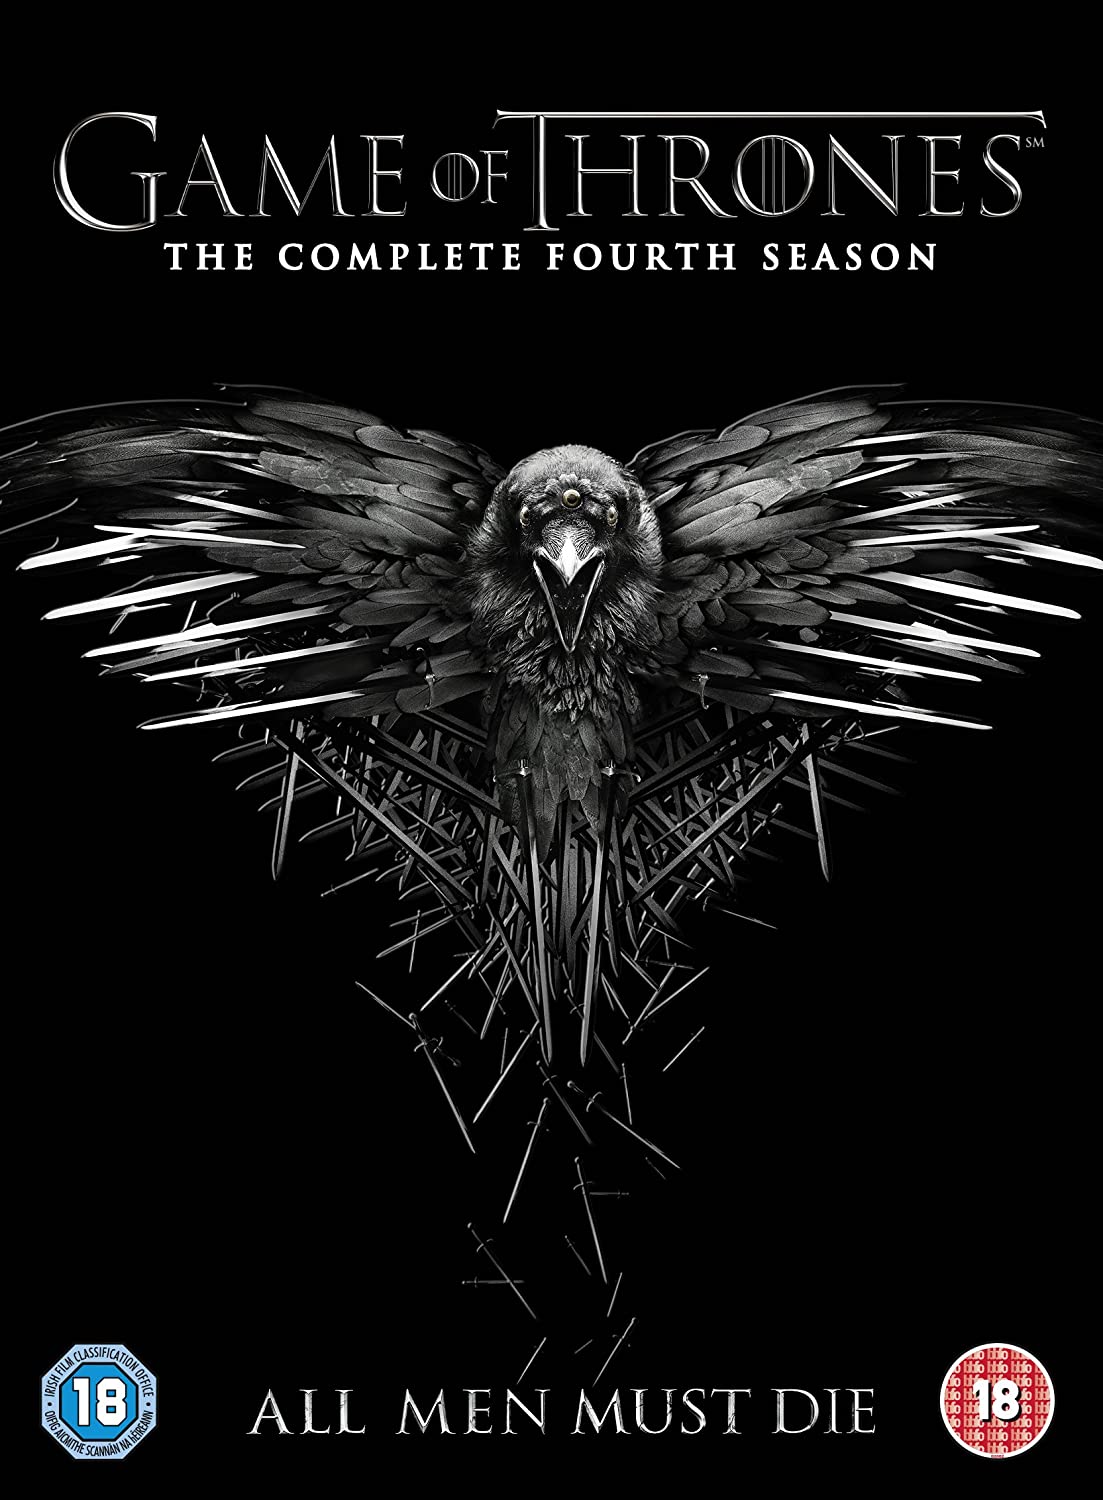 ดูหนังออนไลน์ฟรี Game of Thrones (2014) Season 4 EP.1 มหาศึกชิงบัลลังก์ ปี 4 ตอนที่ 1